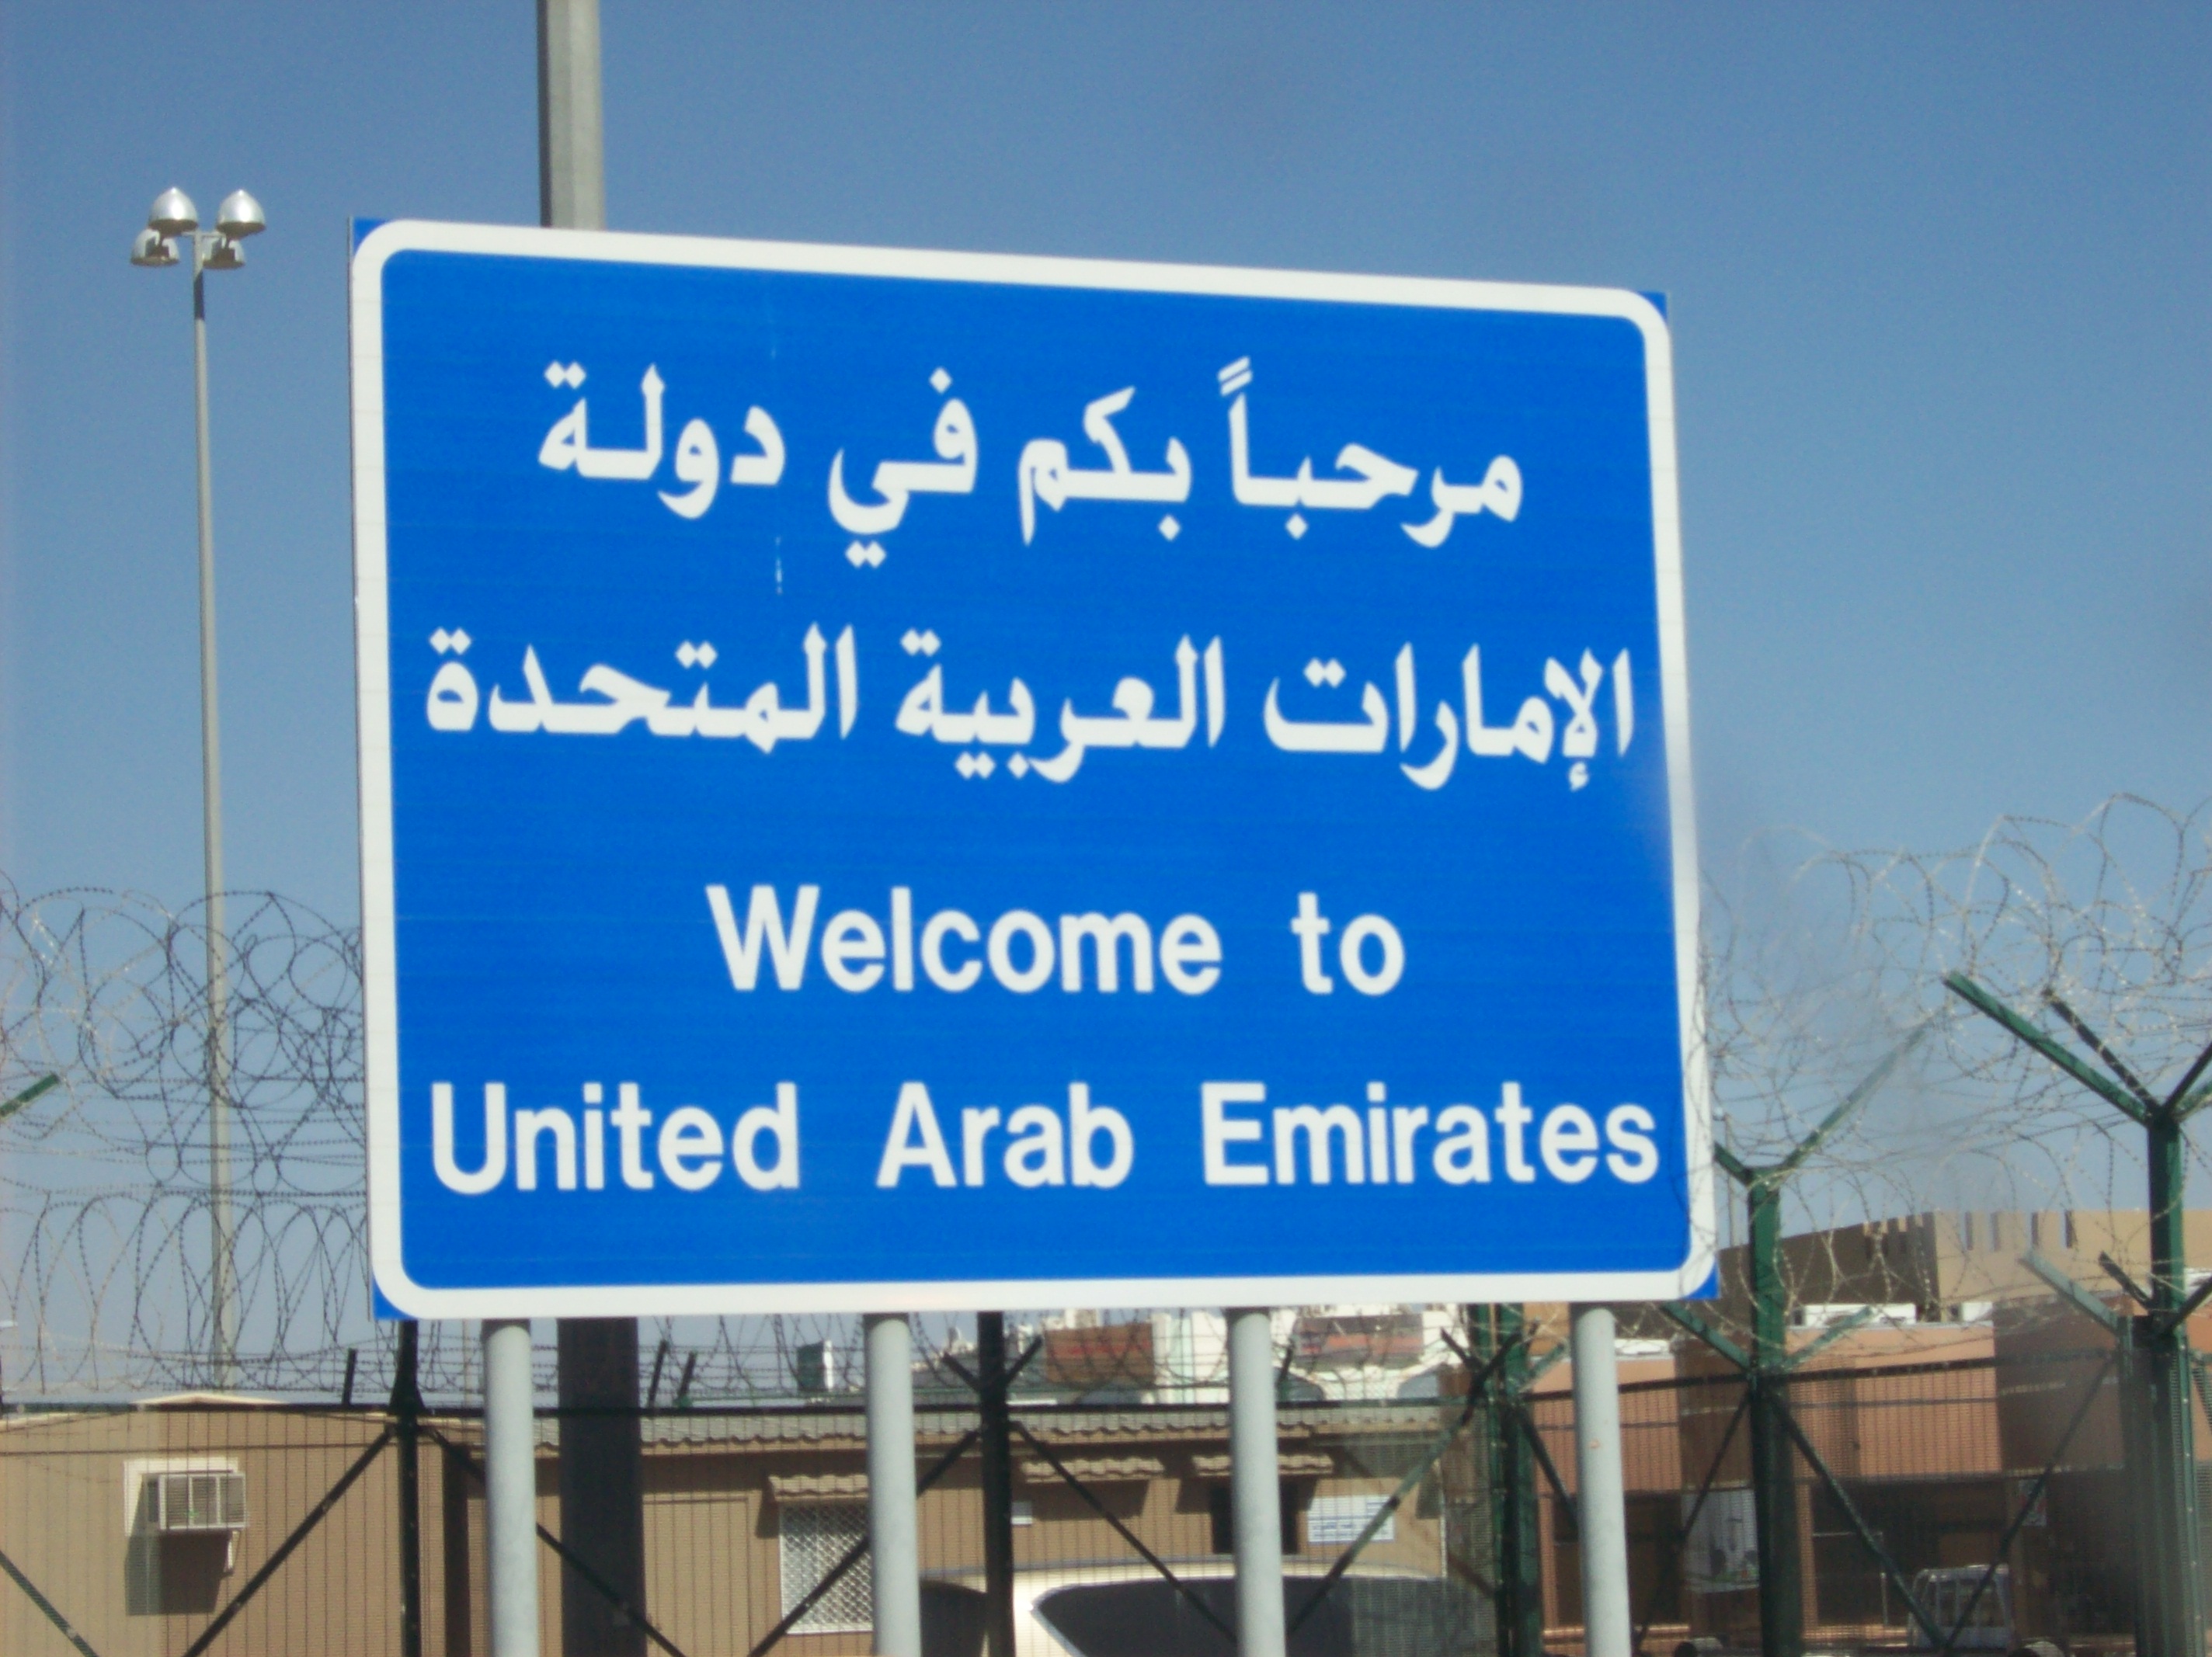 بالاسماء : 58 جواز سفر يمكنه الدخول بدون تأشيرة الى دولة الامارات العربية المتحدة